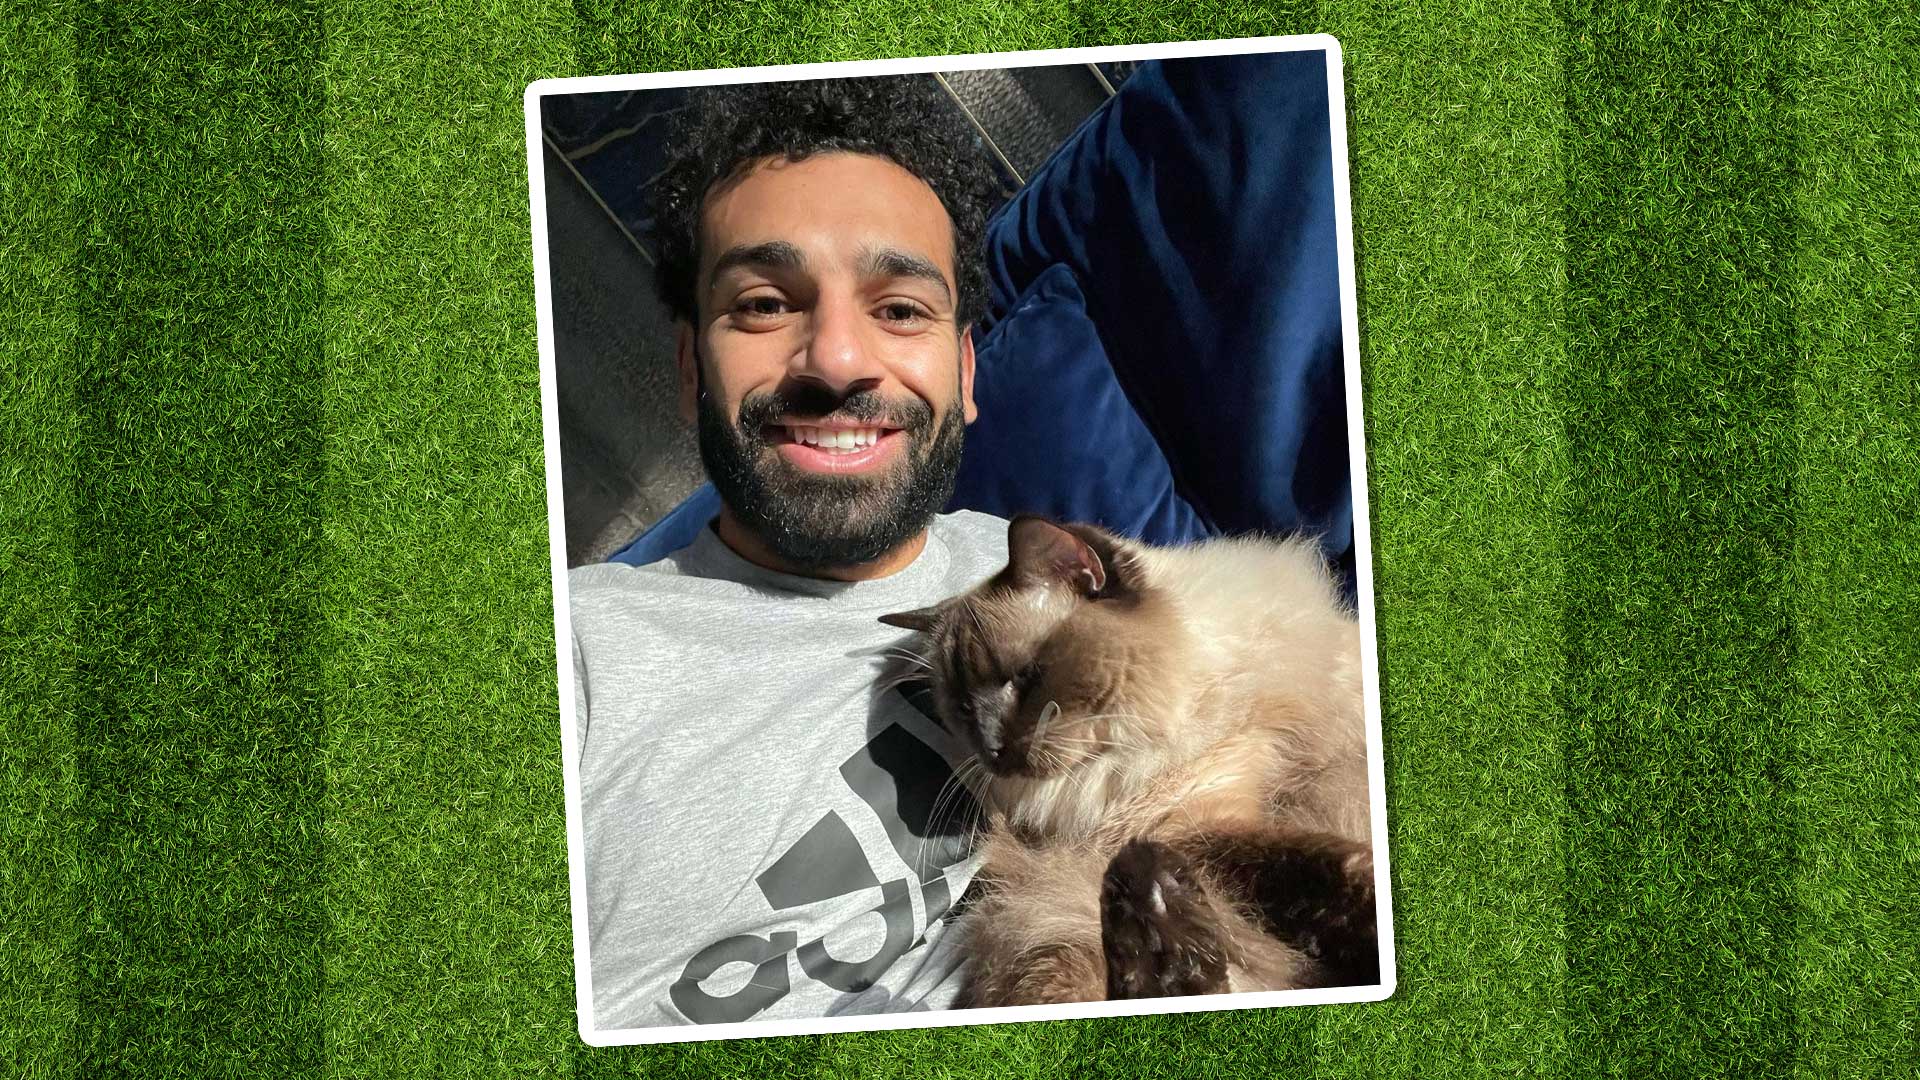 Mo Salah and a cat